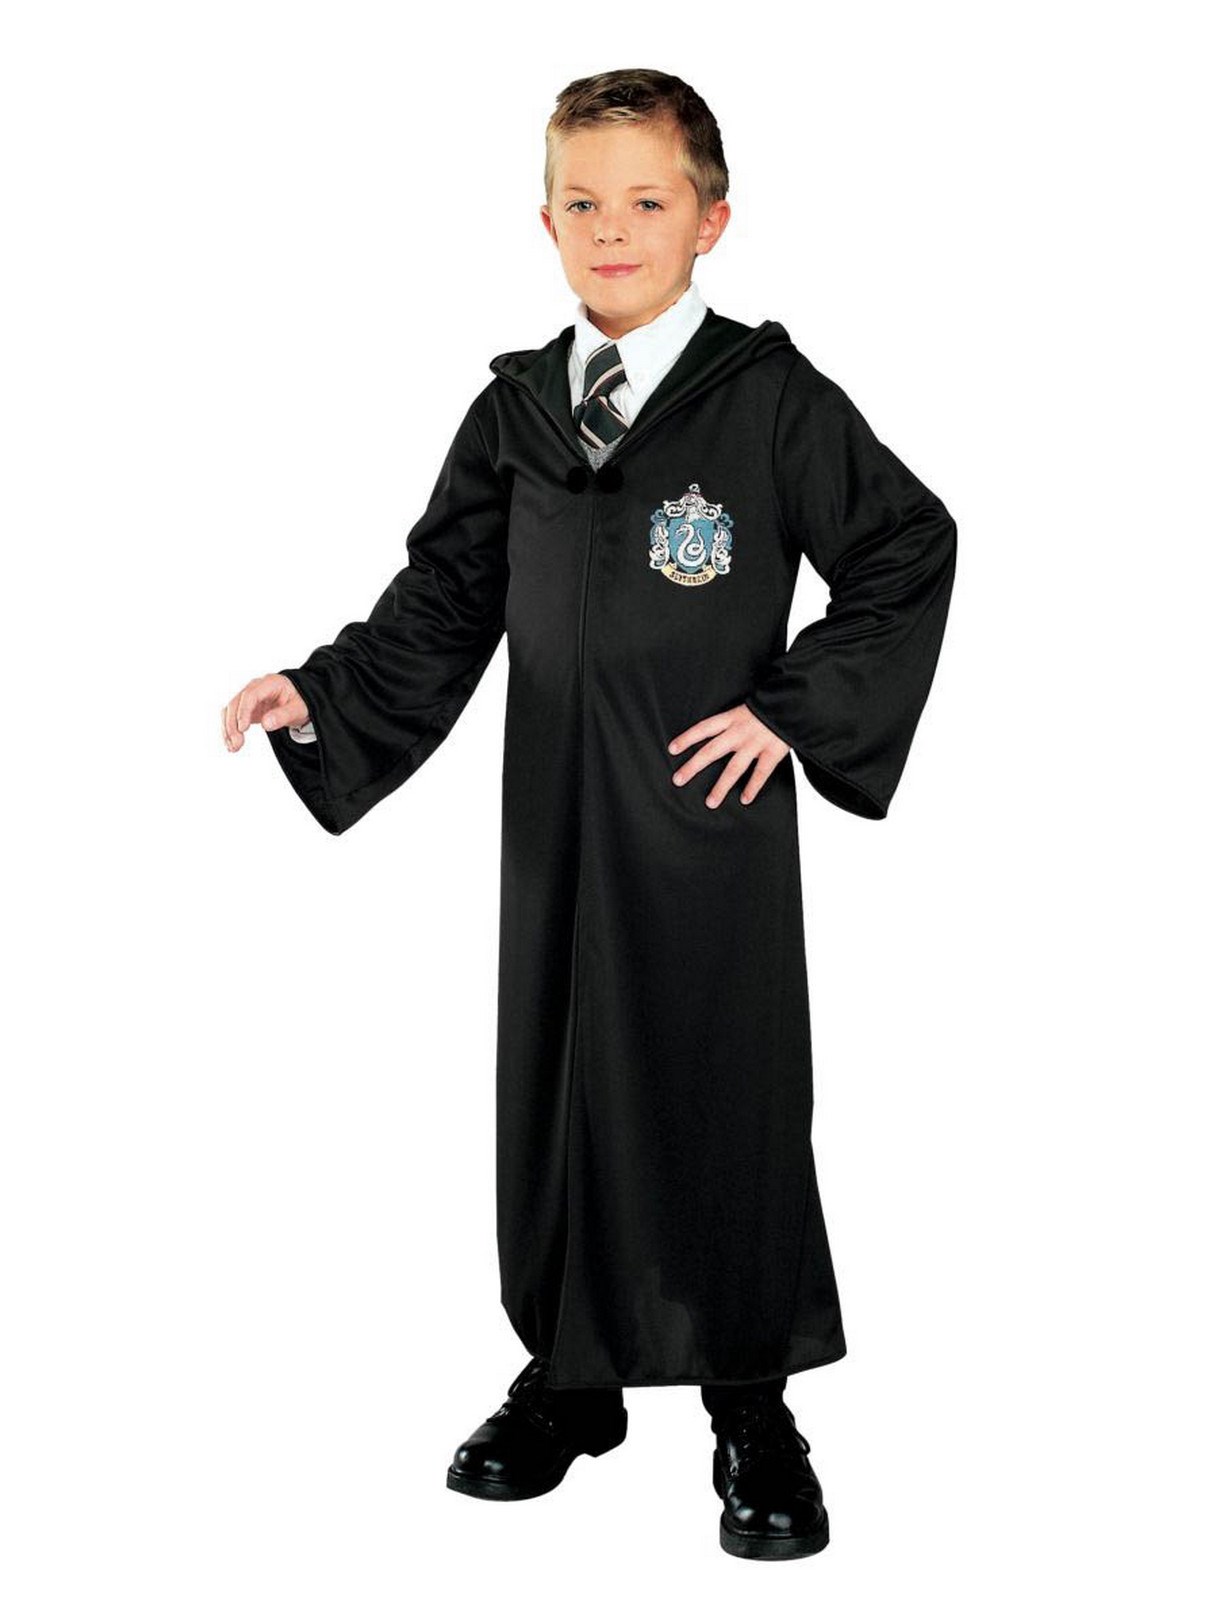 Harry Potter - Slytherin Robe Child Costume